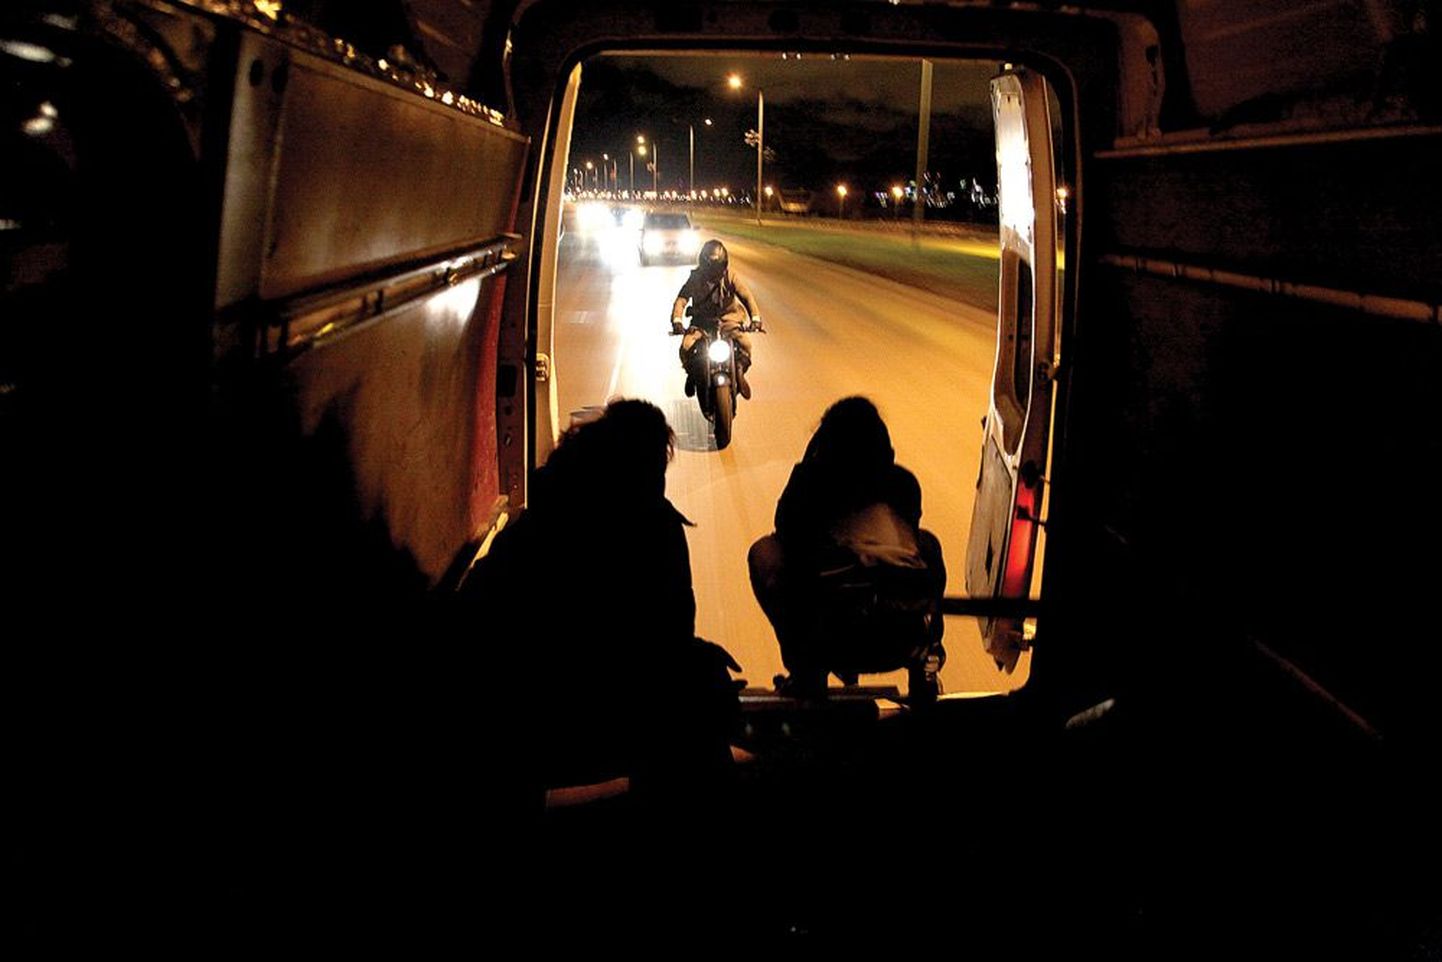 Filmi peategelane kihutab mööda teed. Kaameramees Heigo Lepla (paremal) filmib avatud tagaustega väikebussist, kuhu tal on tulnud end rihmadega kinnitada.